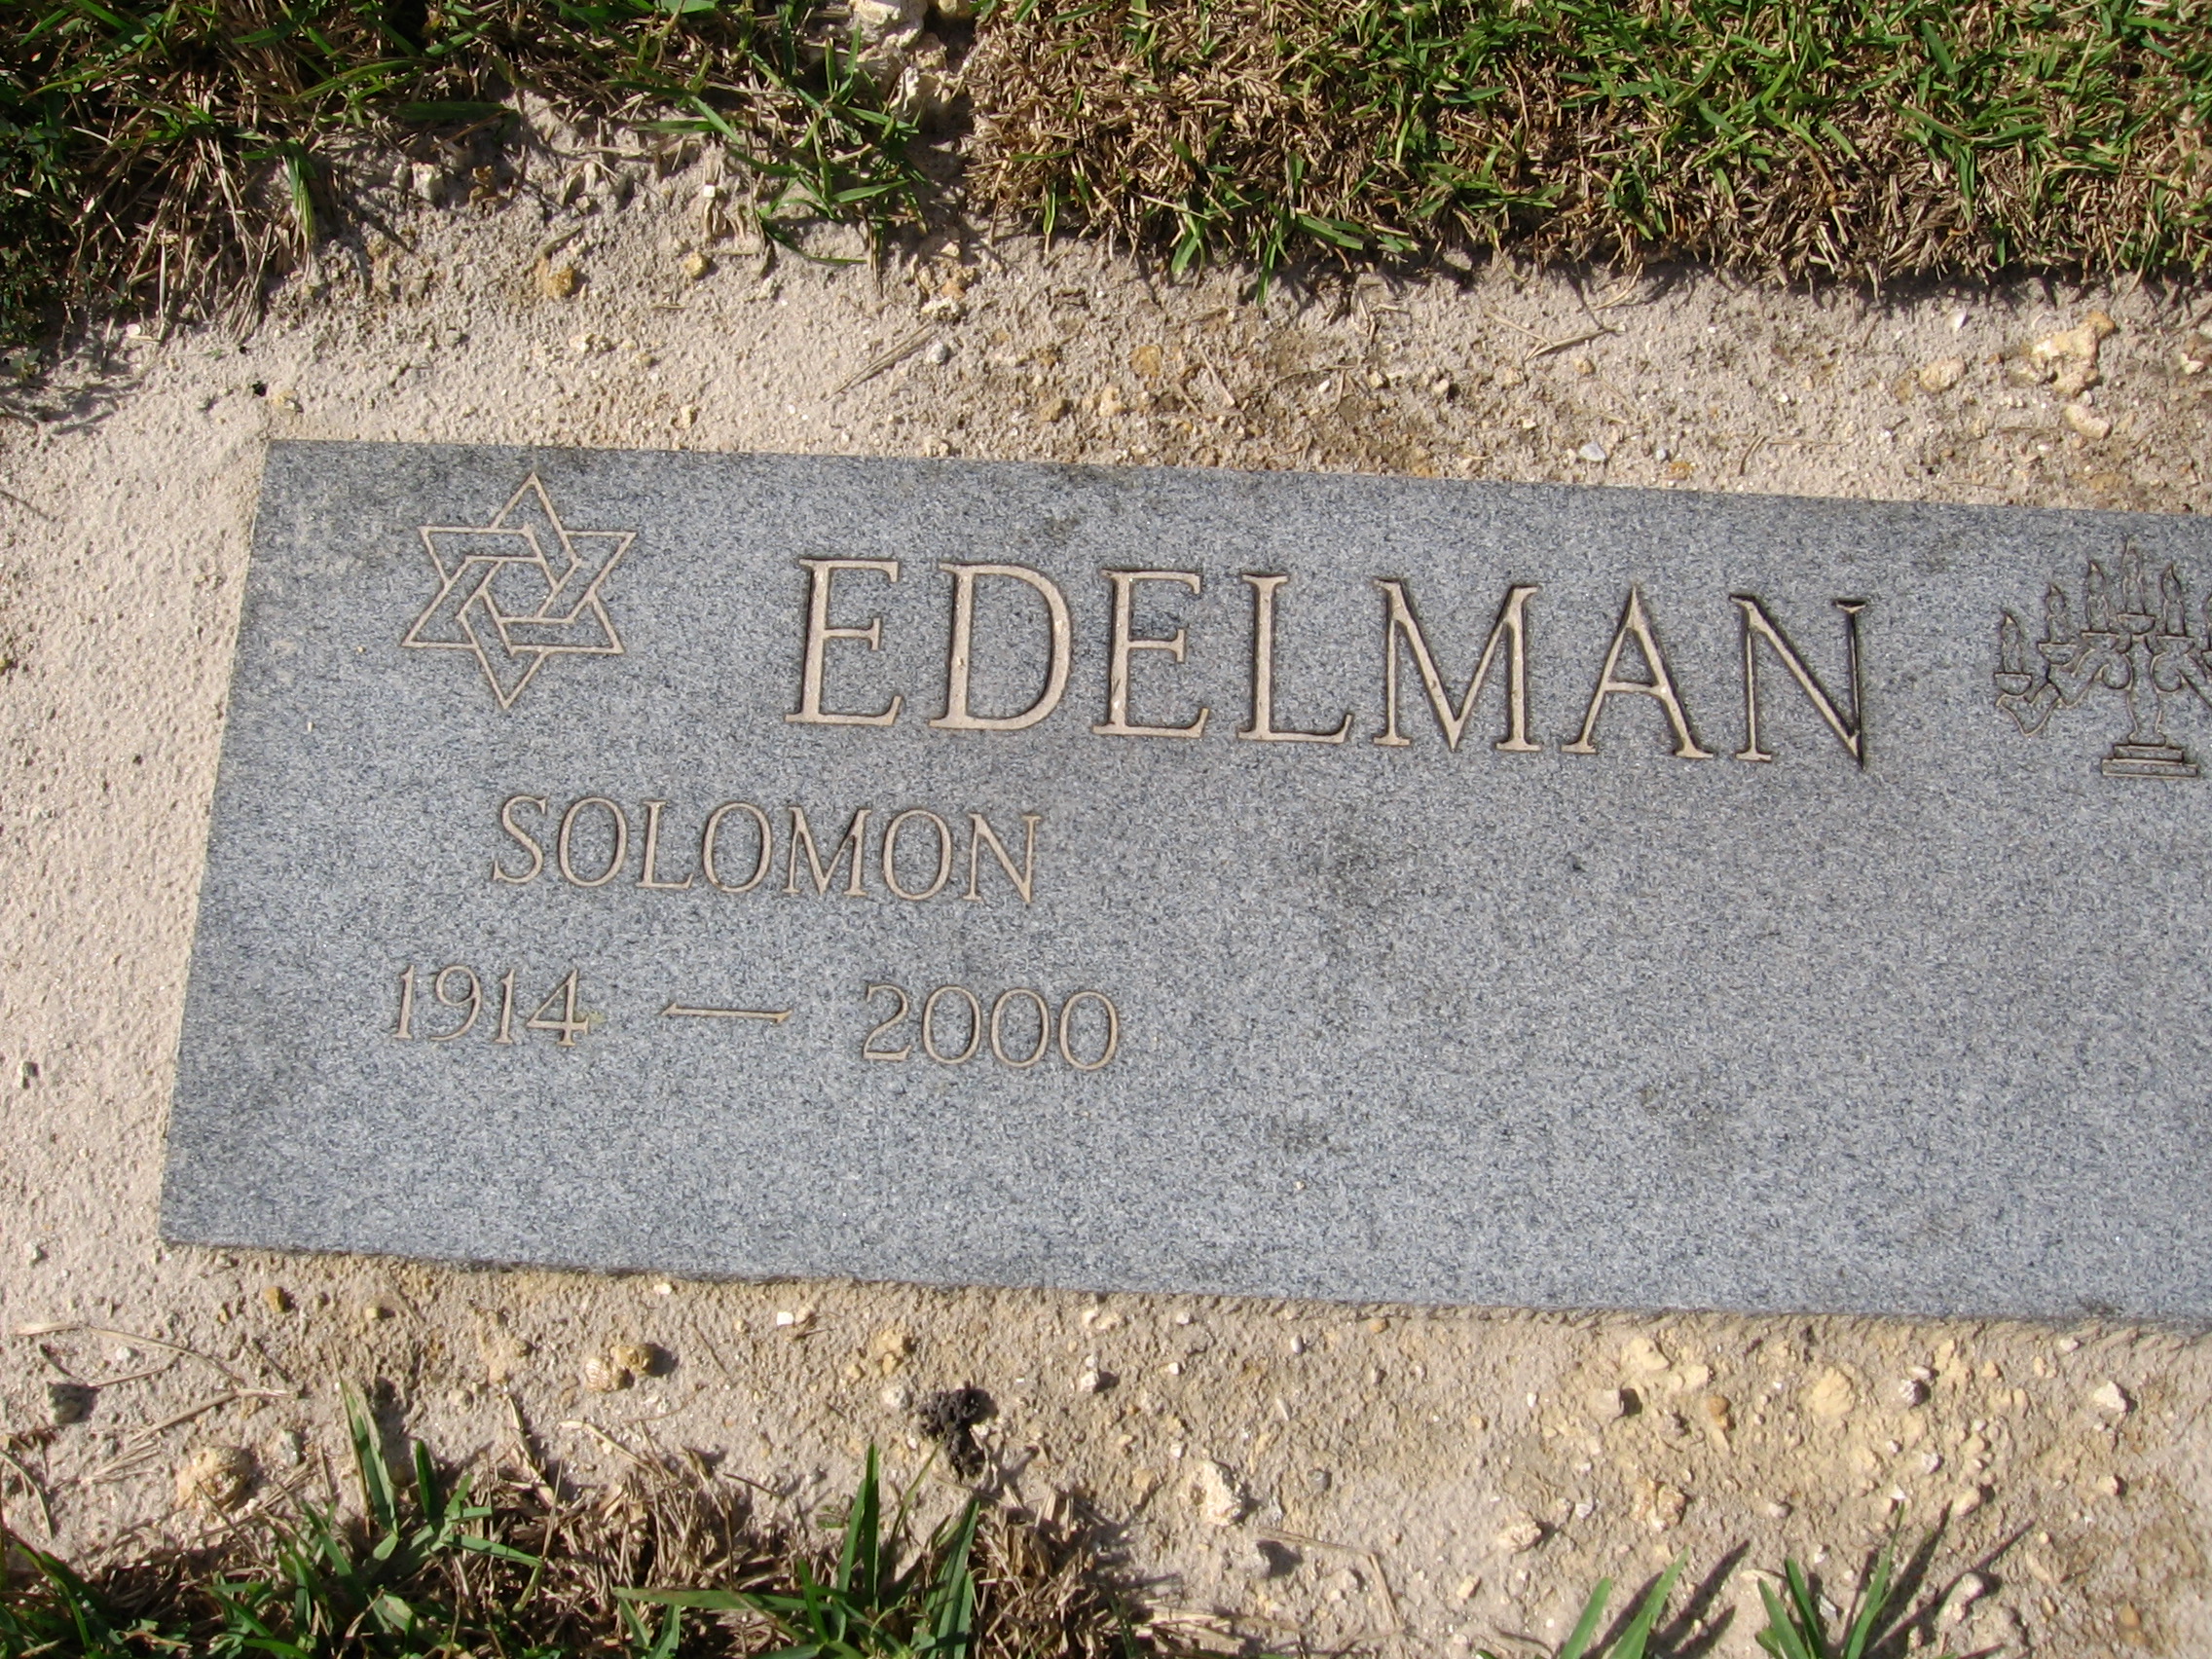 Solomon Edelman